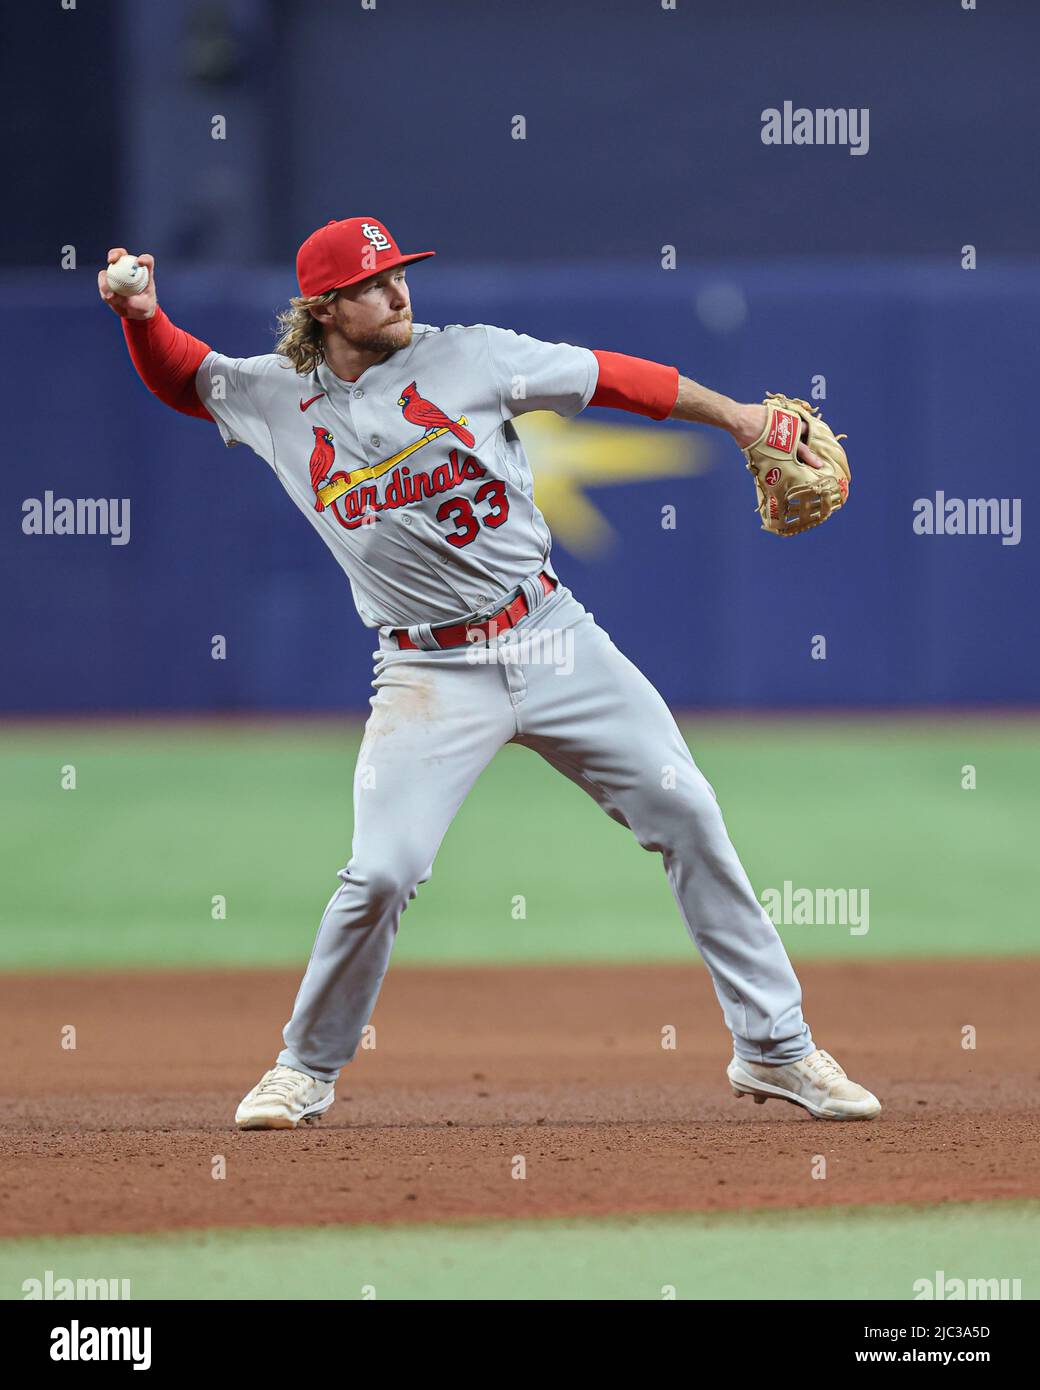 Brendan Donovan's blast powers Cardinals past New York Mets in